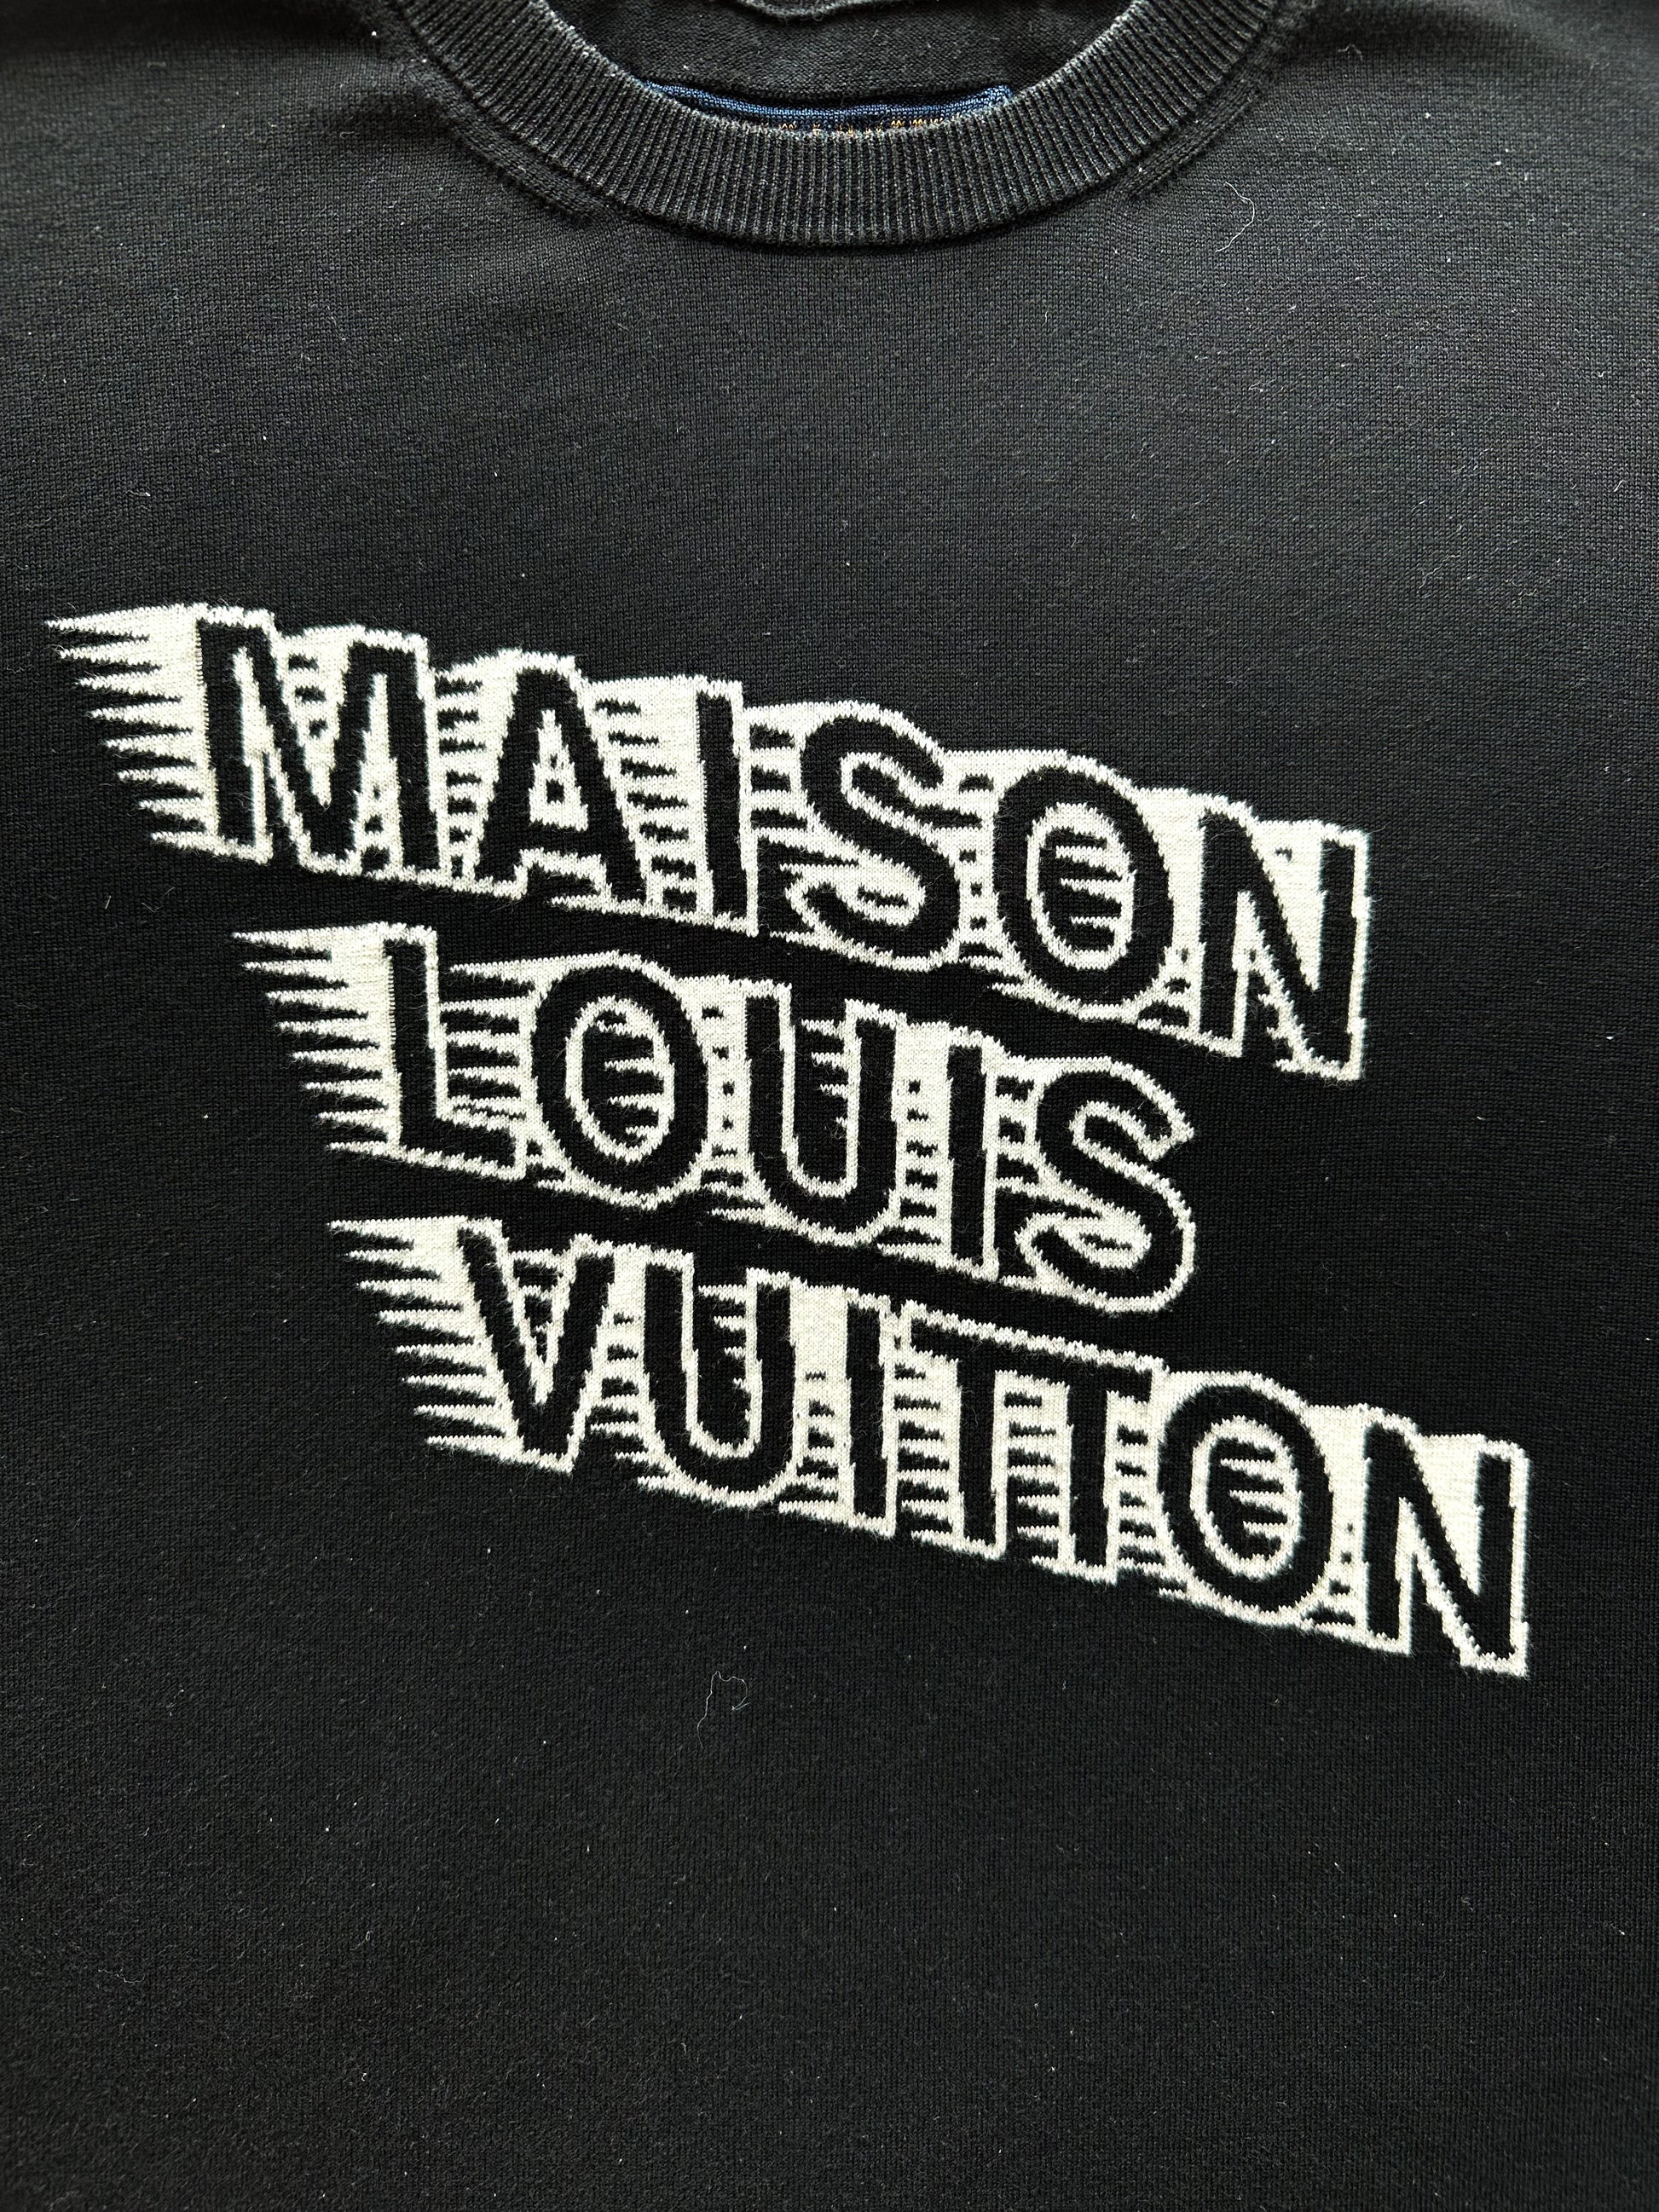 Louis Vuitton Graphic Intarsia Tee – Savonches